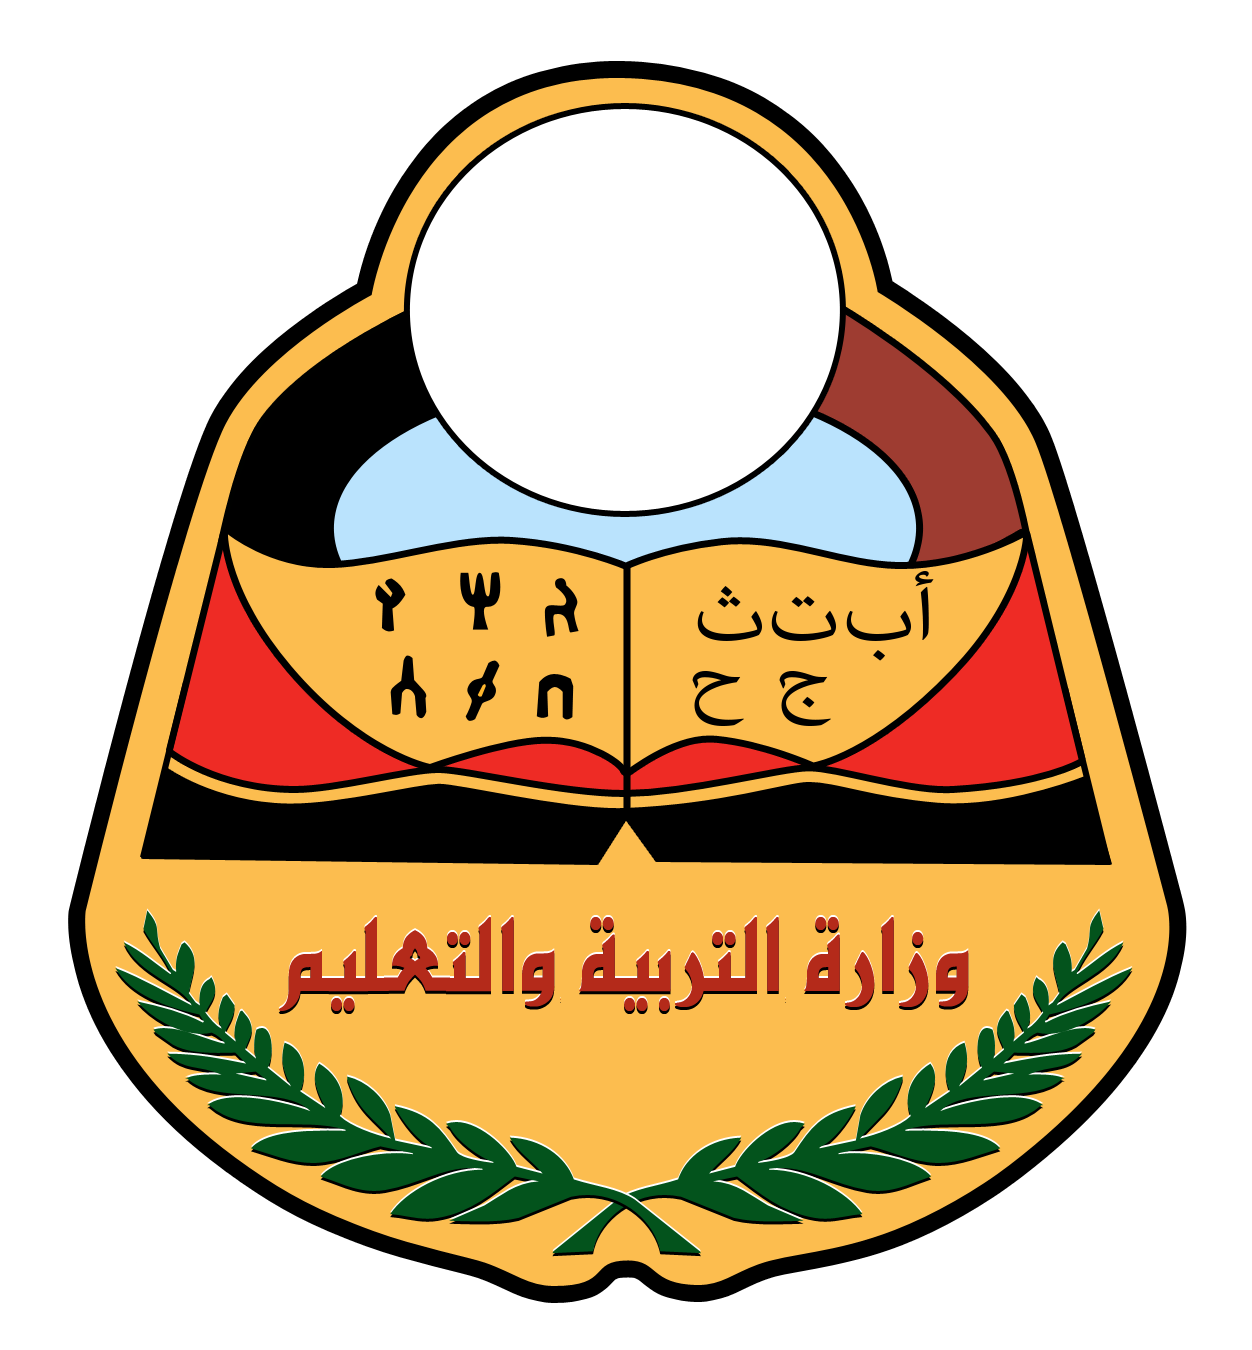 وزارة التربية والتعليم: اقتحام مبنى الوزارة يخدم التيار المعطل لاتفاق الرياض